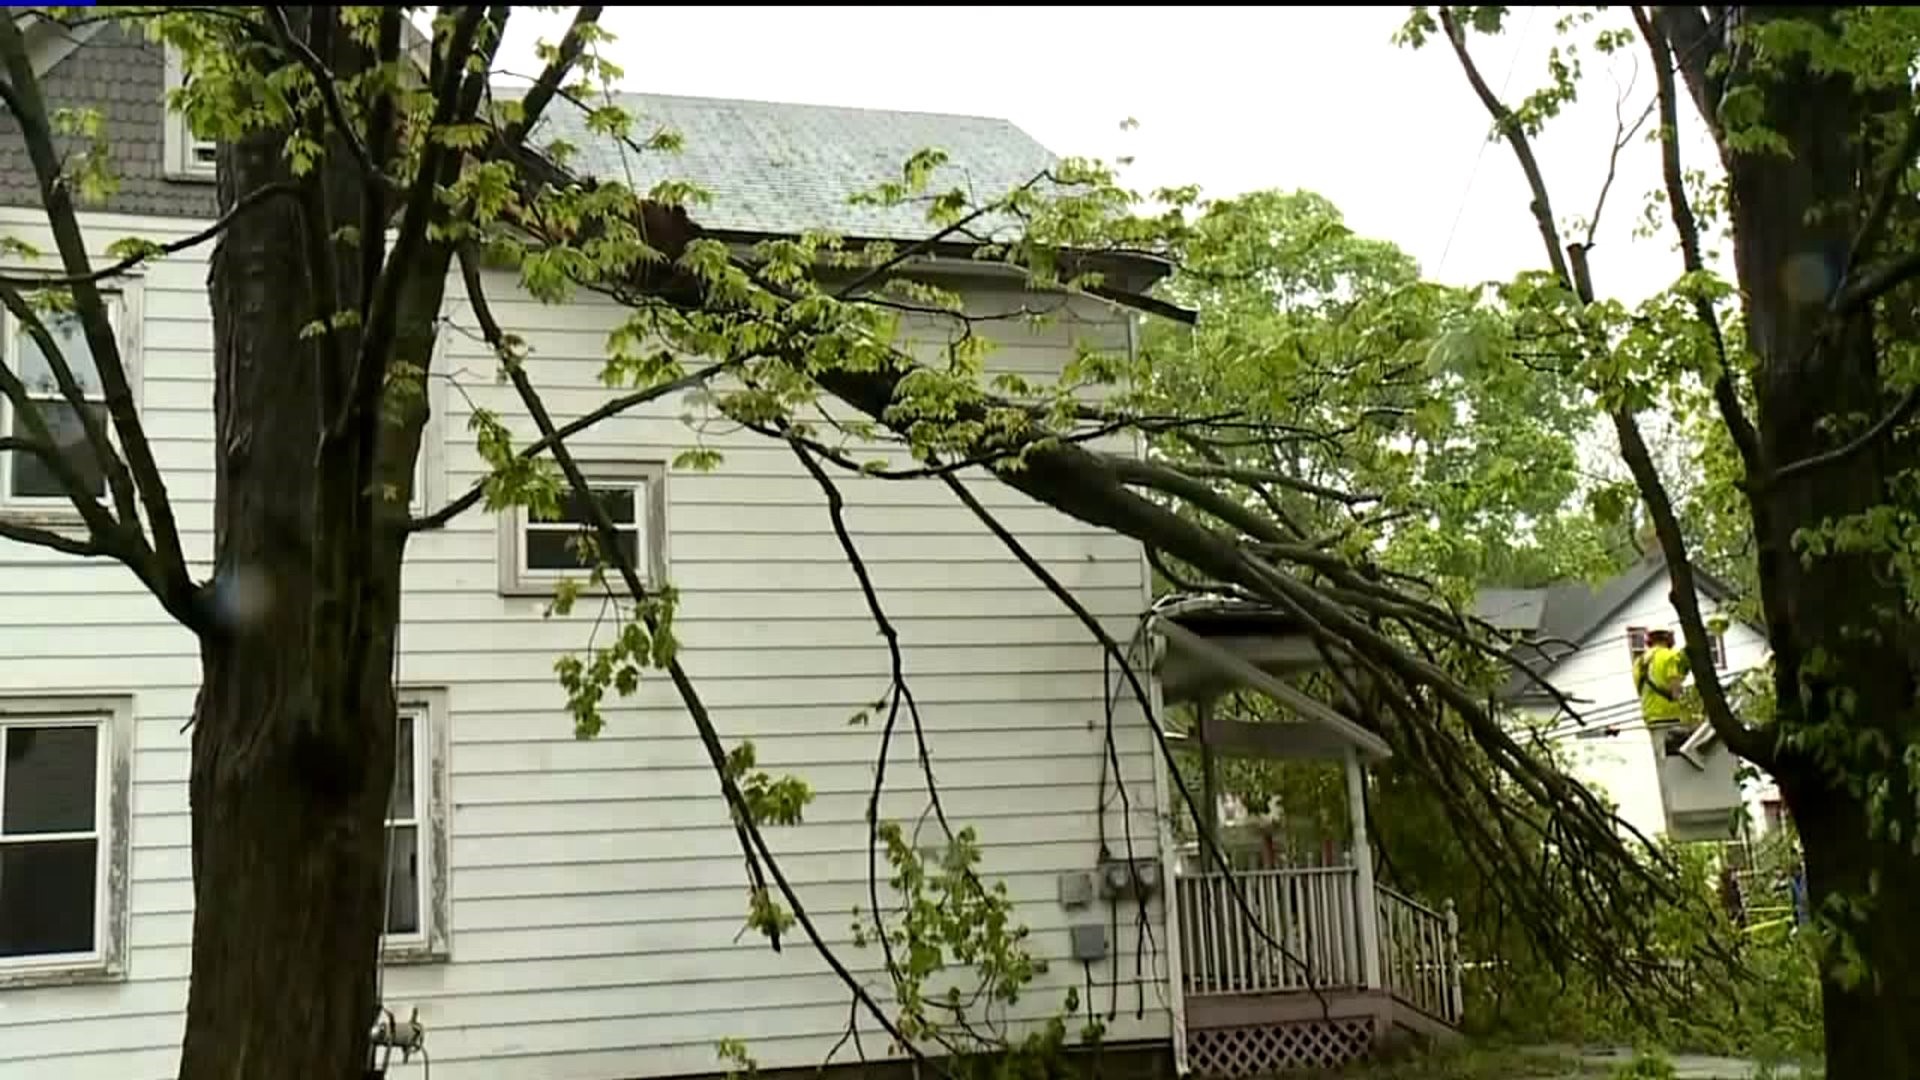 Severe Storm Damage in the Poconos